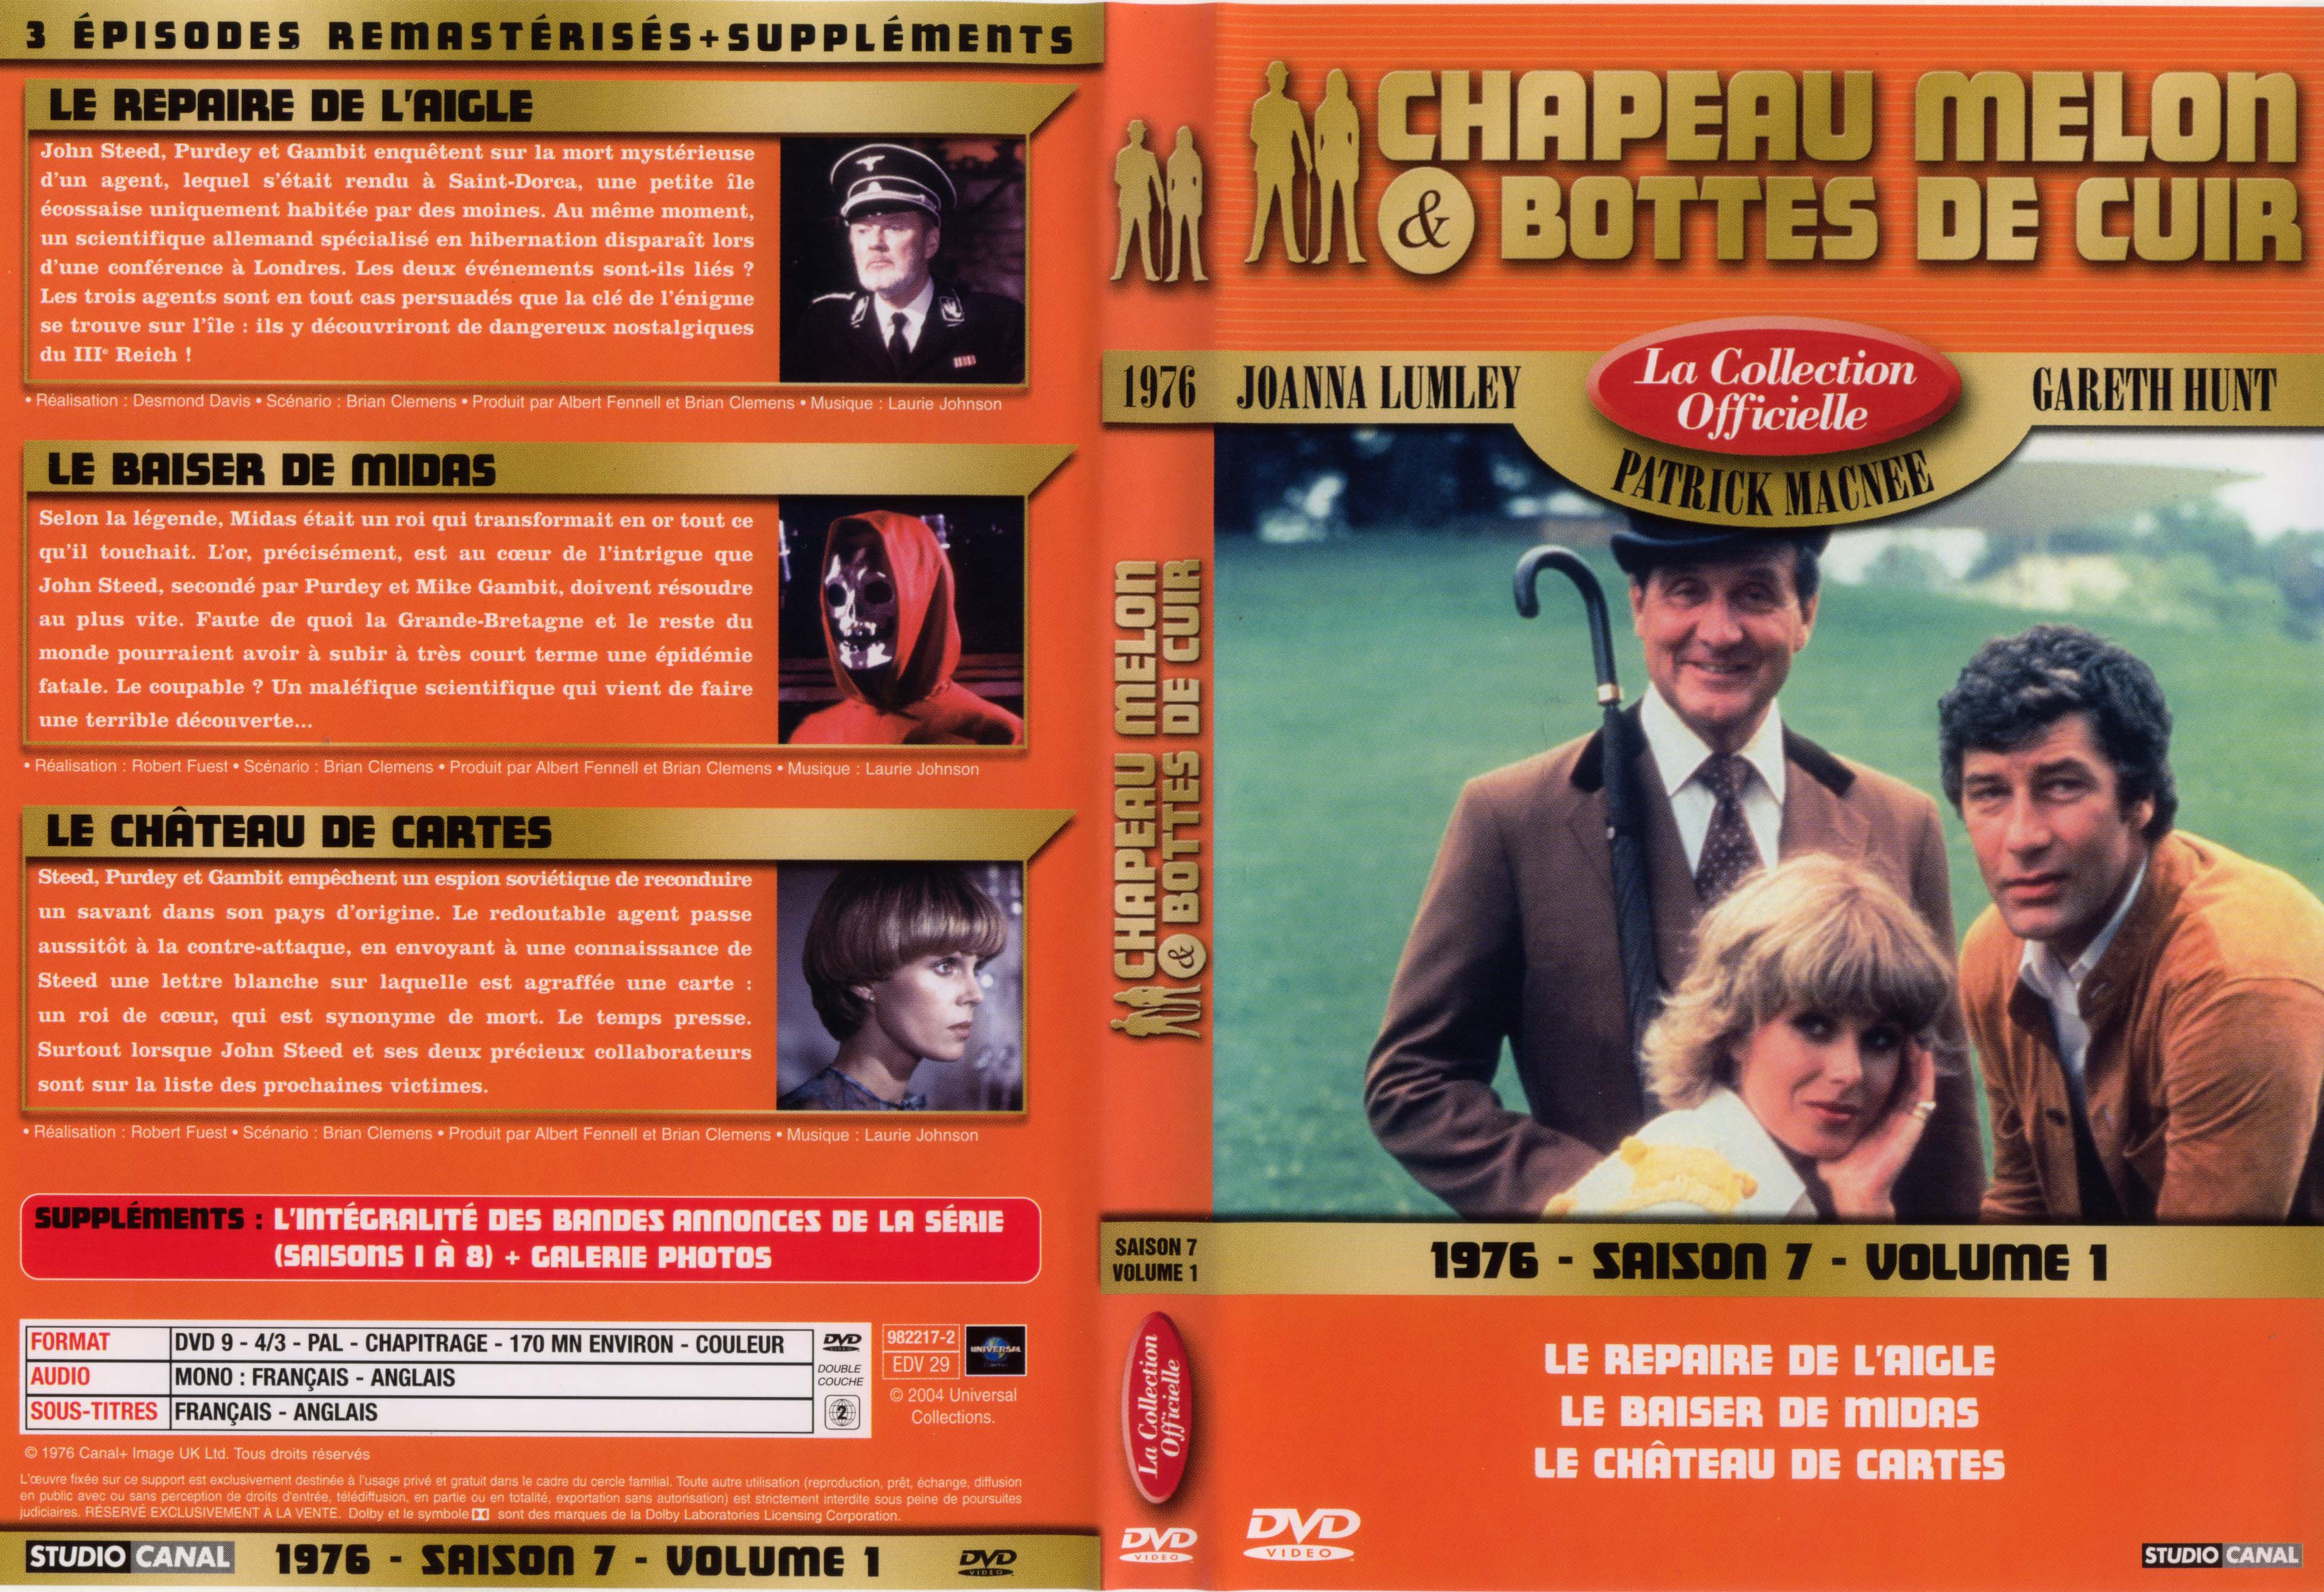 Jaquette DVD Chapeau melon et bottes de cuir 1976 saison 7 vol 1